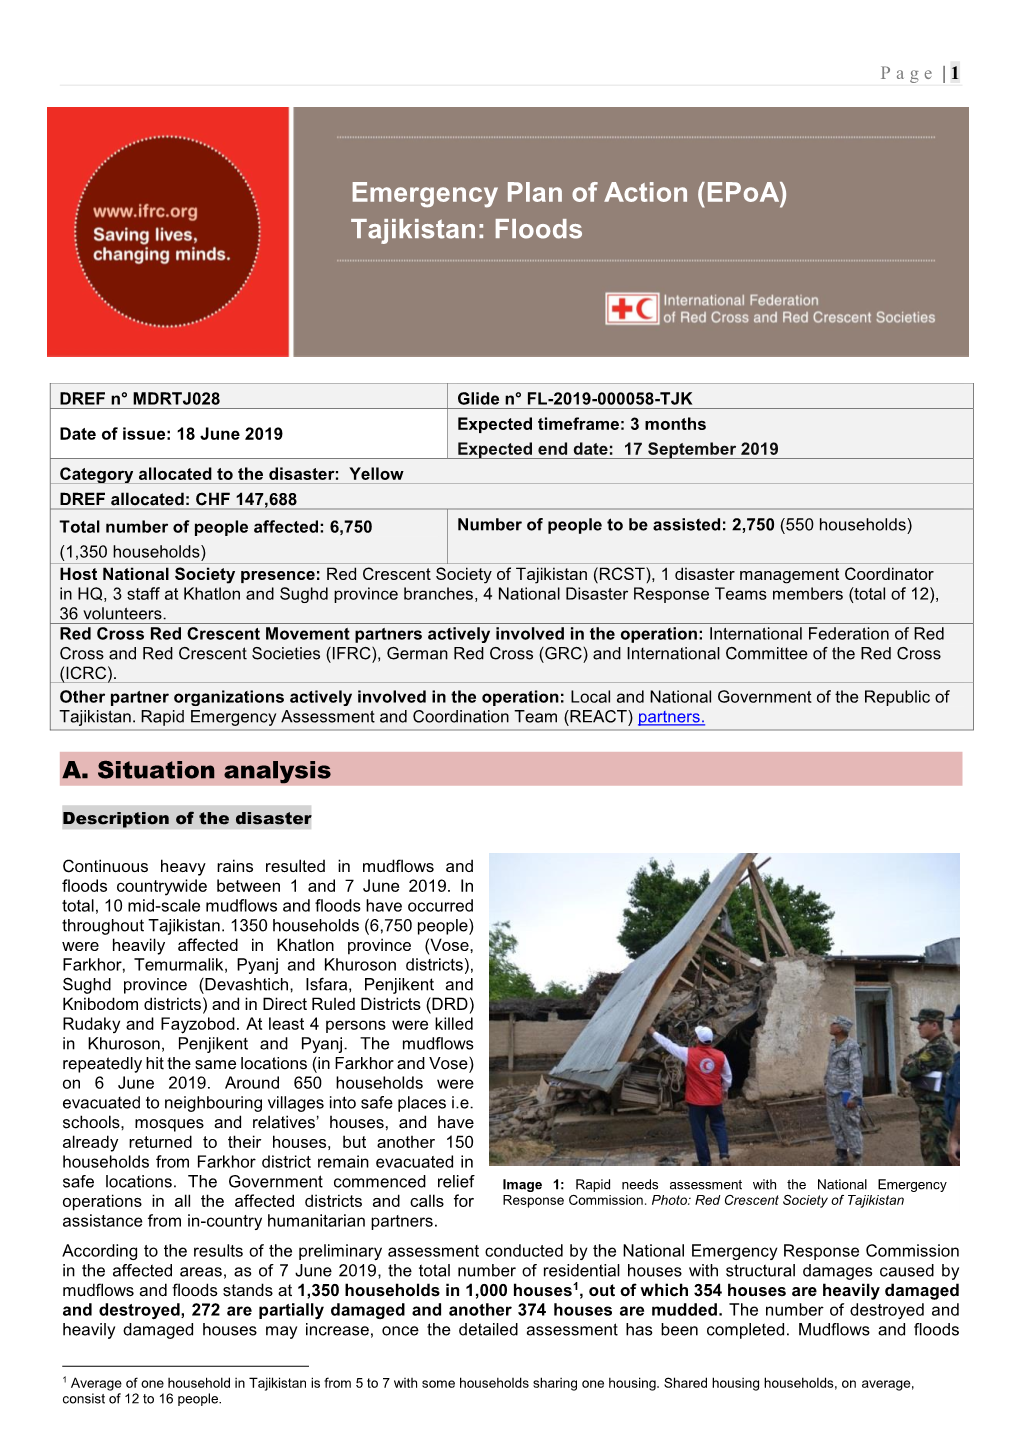 Tajikistan: Floods